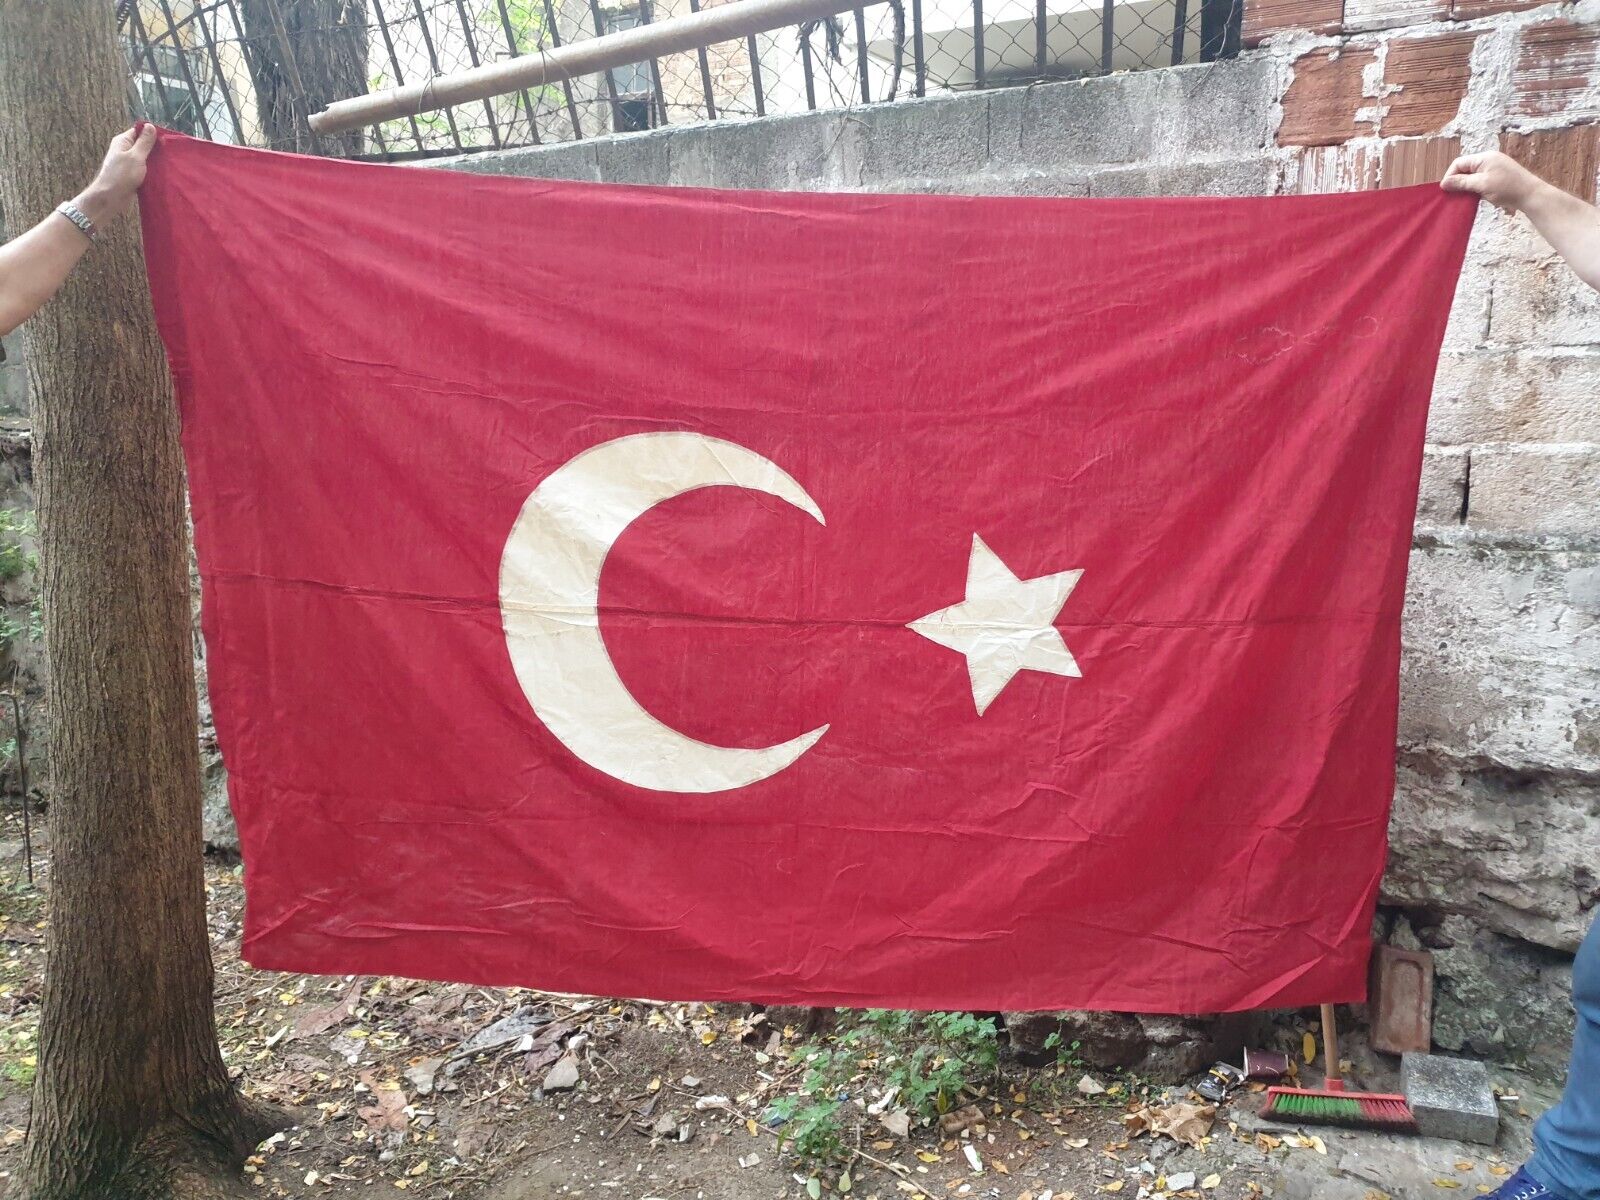 Turkish Ottoman Empire Turkey WW1 Battle Soldier Flag Very RARE